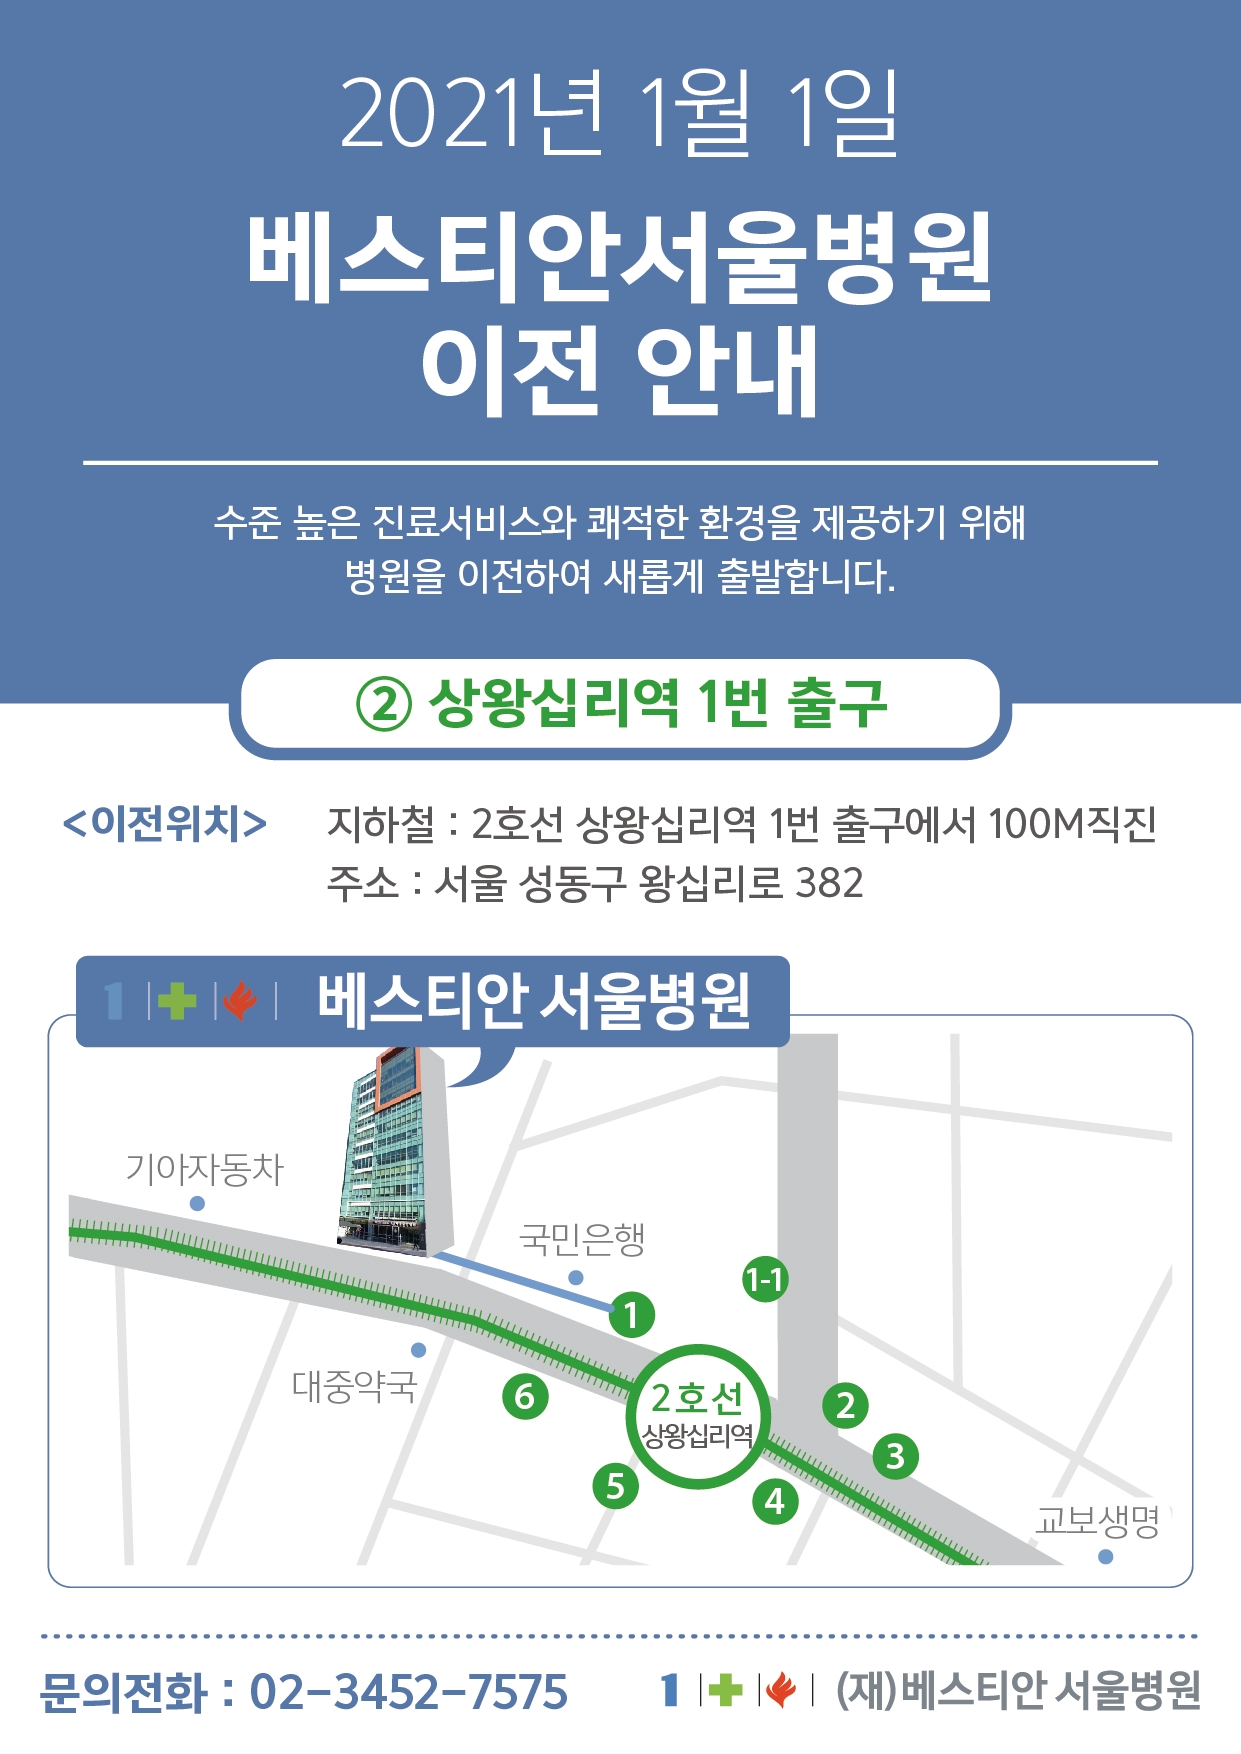 베스티안 서울병원 <상왕십리역> 인근으로 이전안내 (2021년 1월 1일)